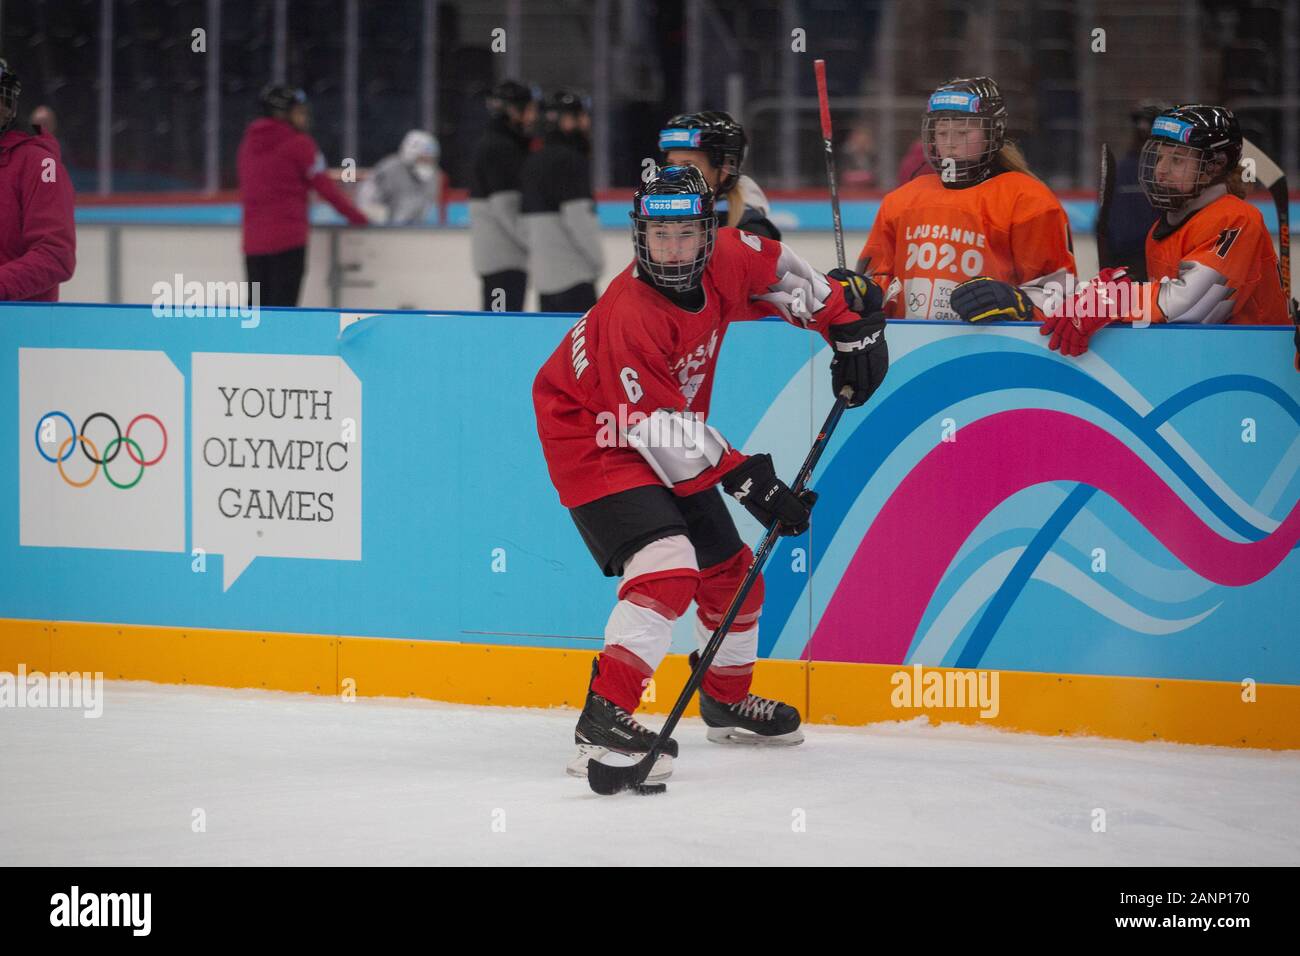 Abby Rowbotham (14) de Team GB compite en la ronda preliminar de 3 torneos del NOC mixto de hockey sobre hielo para mujeres de Lausana 2020 el 10 de enero de 2020 Foto de stock